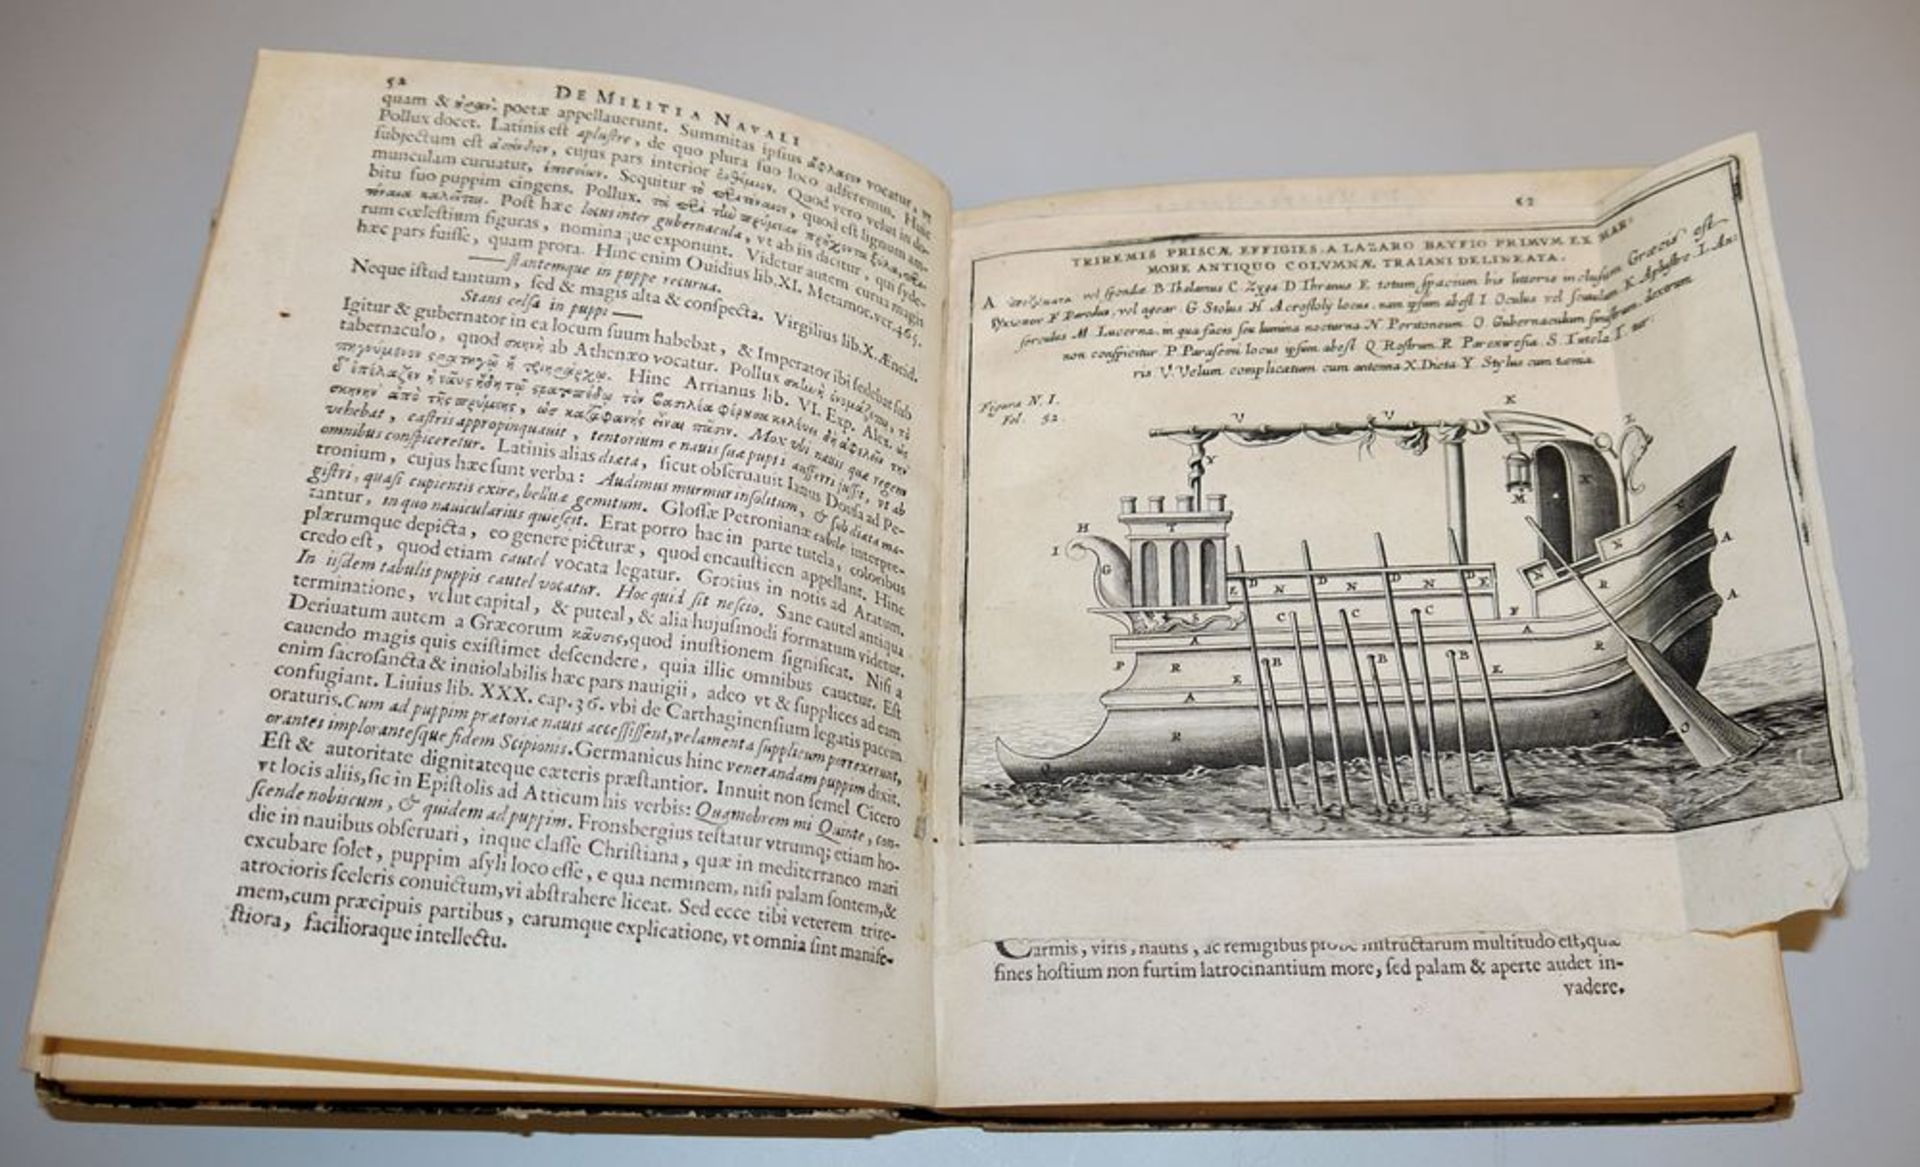 Militia navali veterum (Marinegeschichte der alten Griechen und Römer), Erstausgabe von 1654 mit Ho